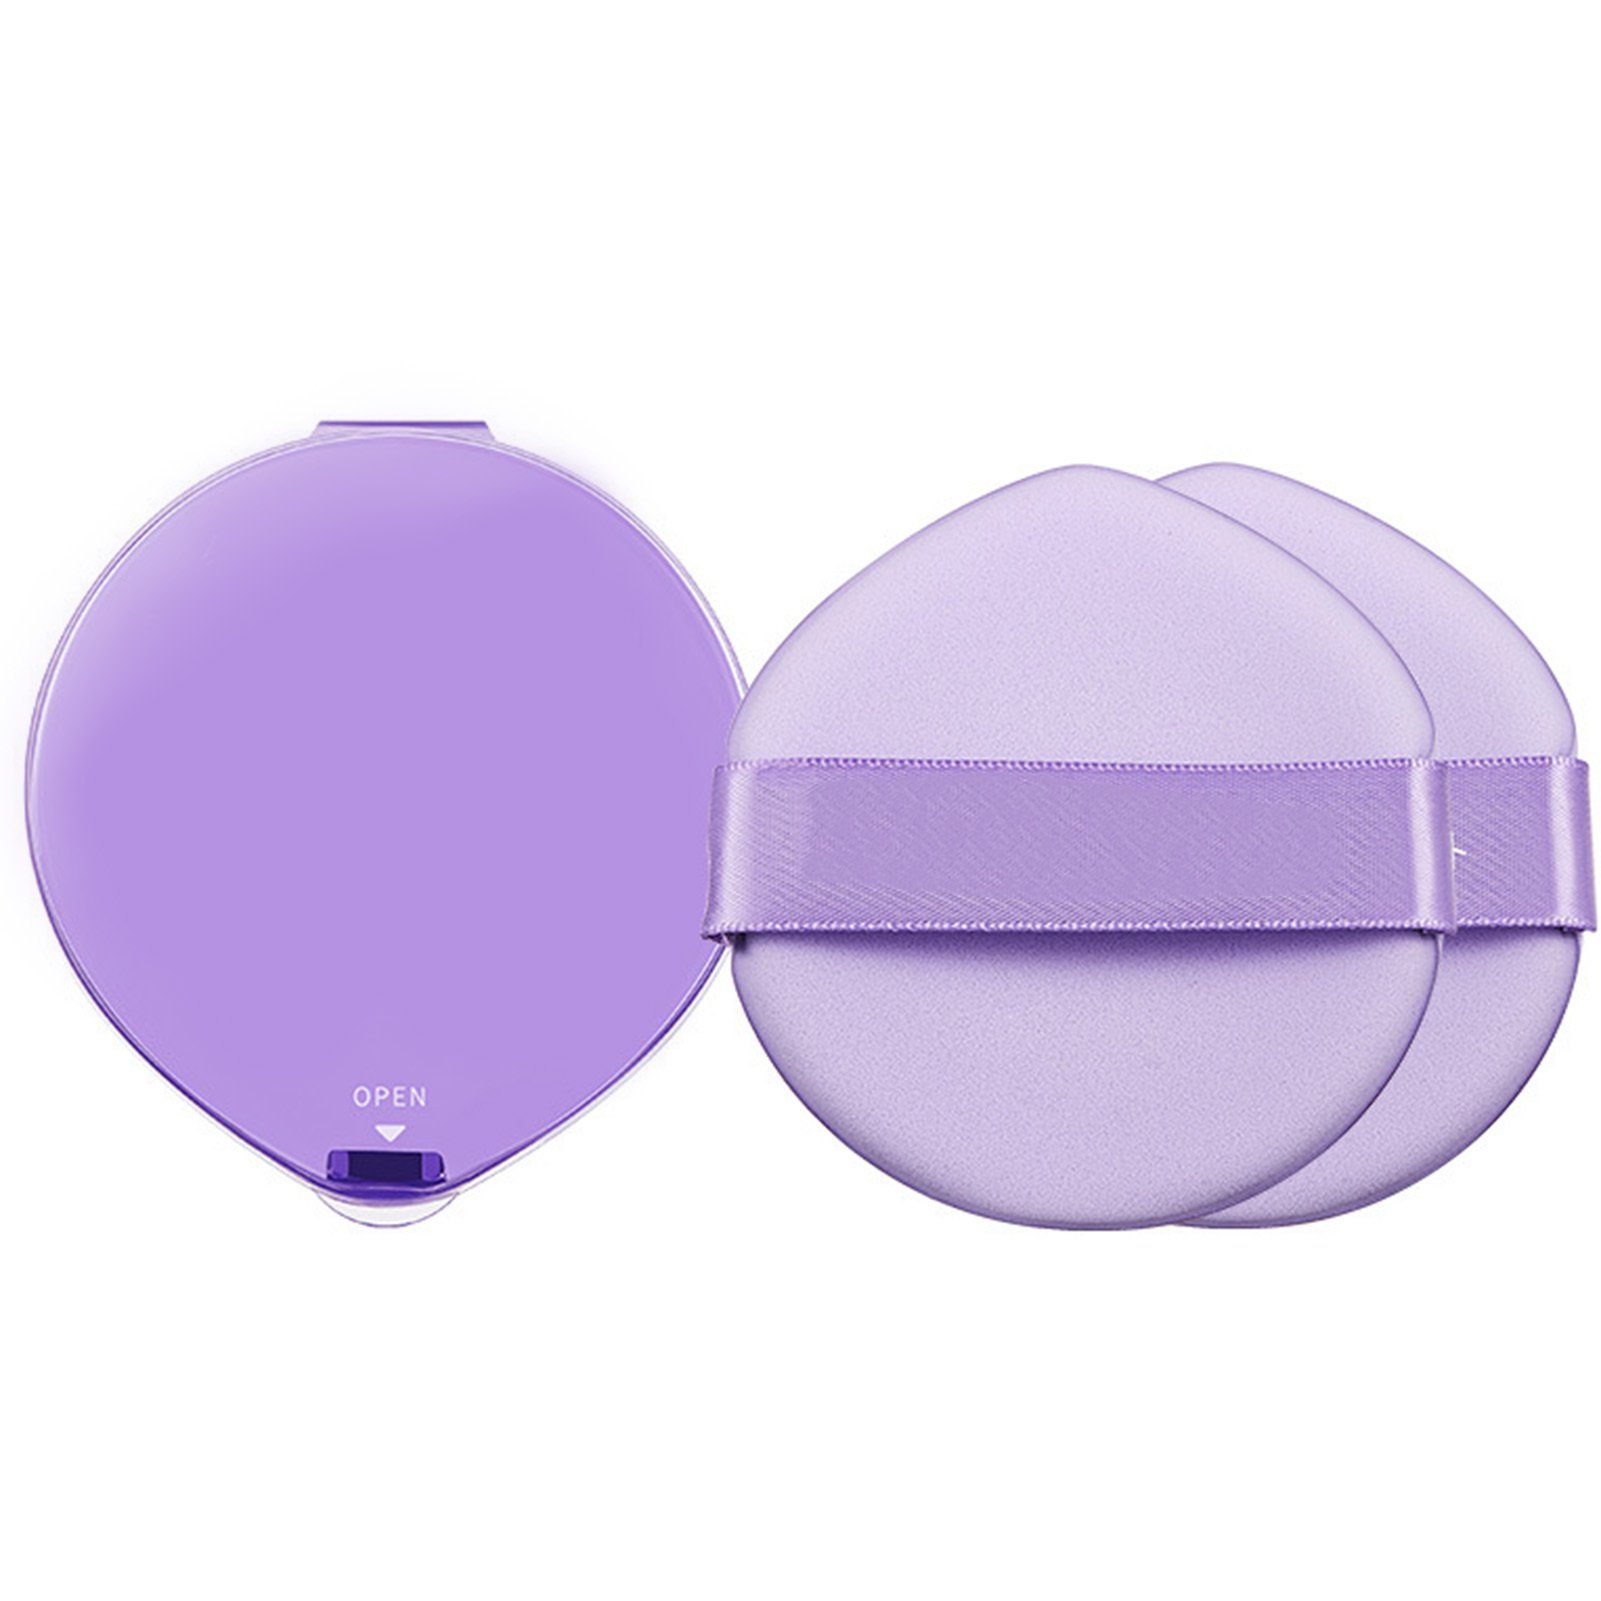 Blusmart Puderquaste 2 Stück Große Tropfenförmige Puderquaste Mit Box, Trocken Und Nass, 2 tlg., Dual-Use-Make-up-Schwamm für Gesichts-Make-up purple